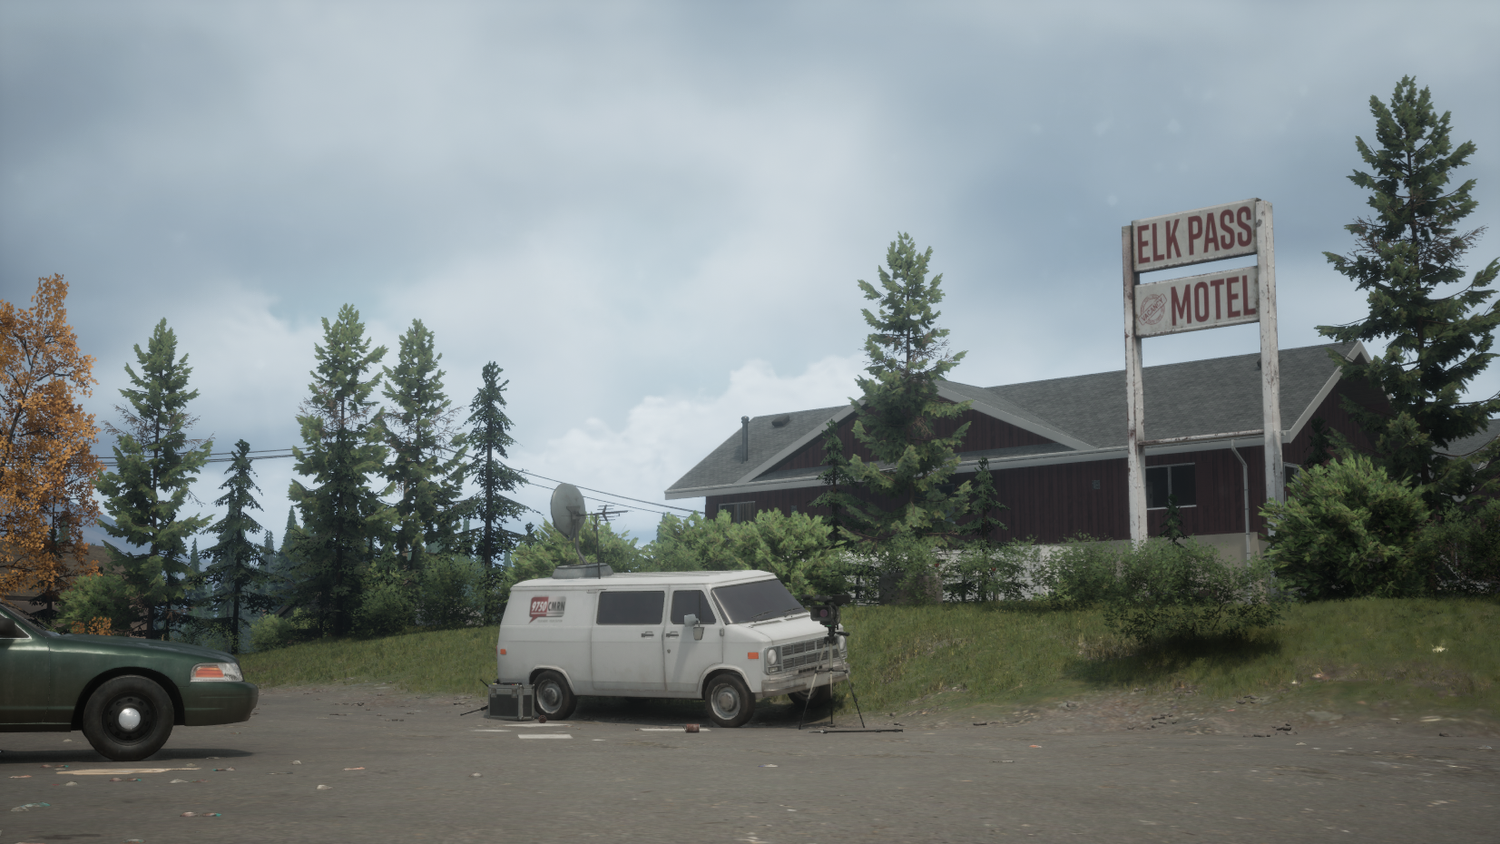 Elk Pass Motel in Dead Man's Flats